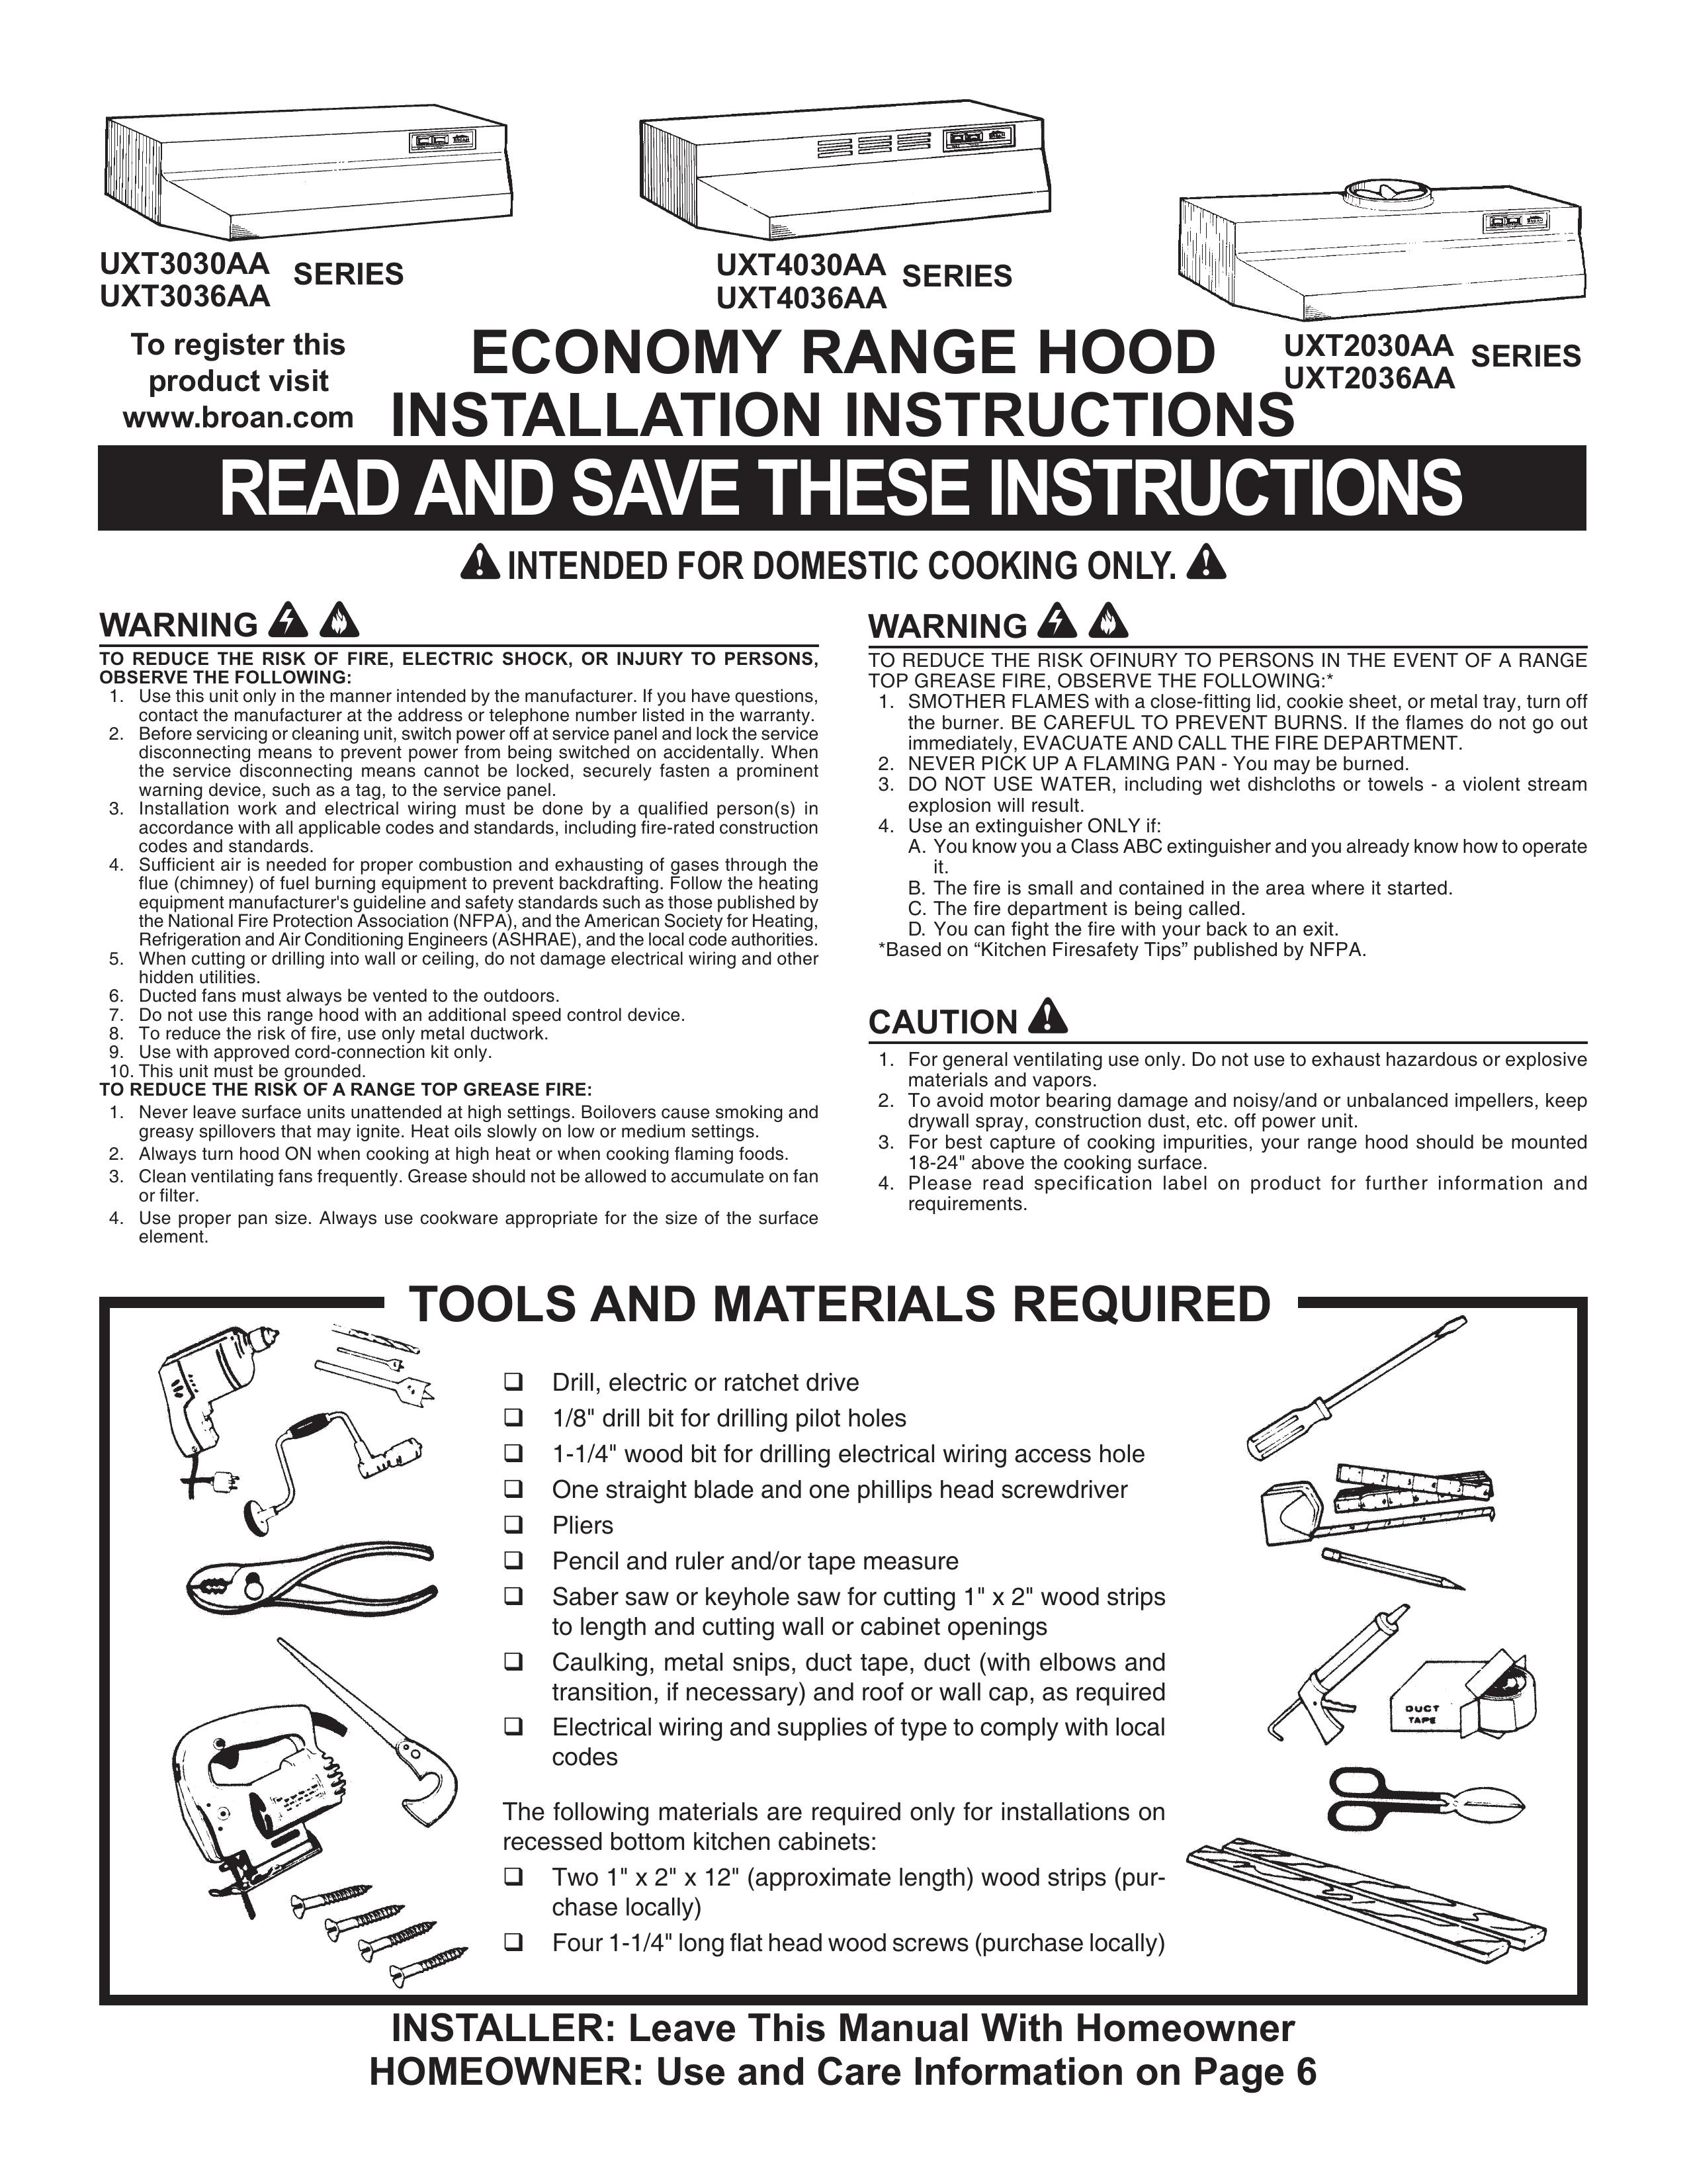 Maytag UXT2036AA Ventilation Hood User Manual